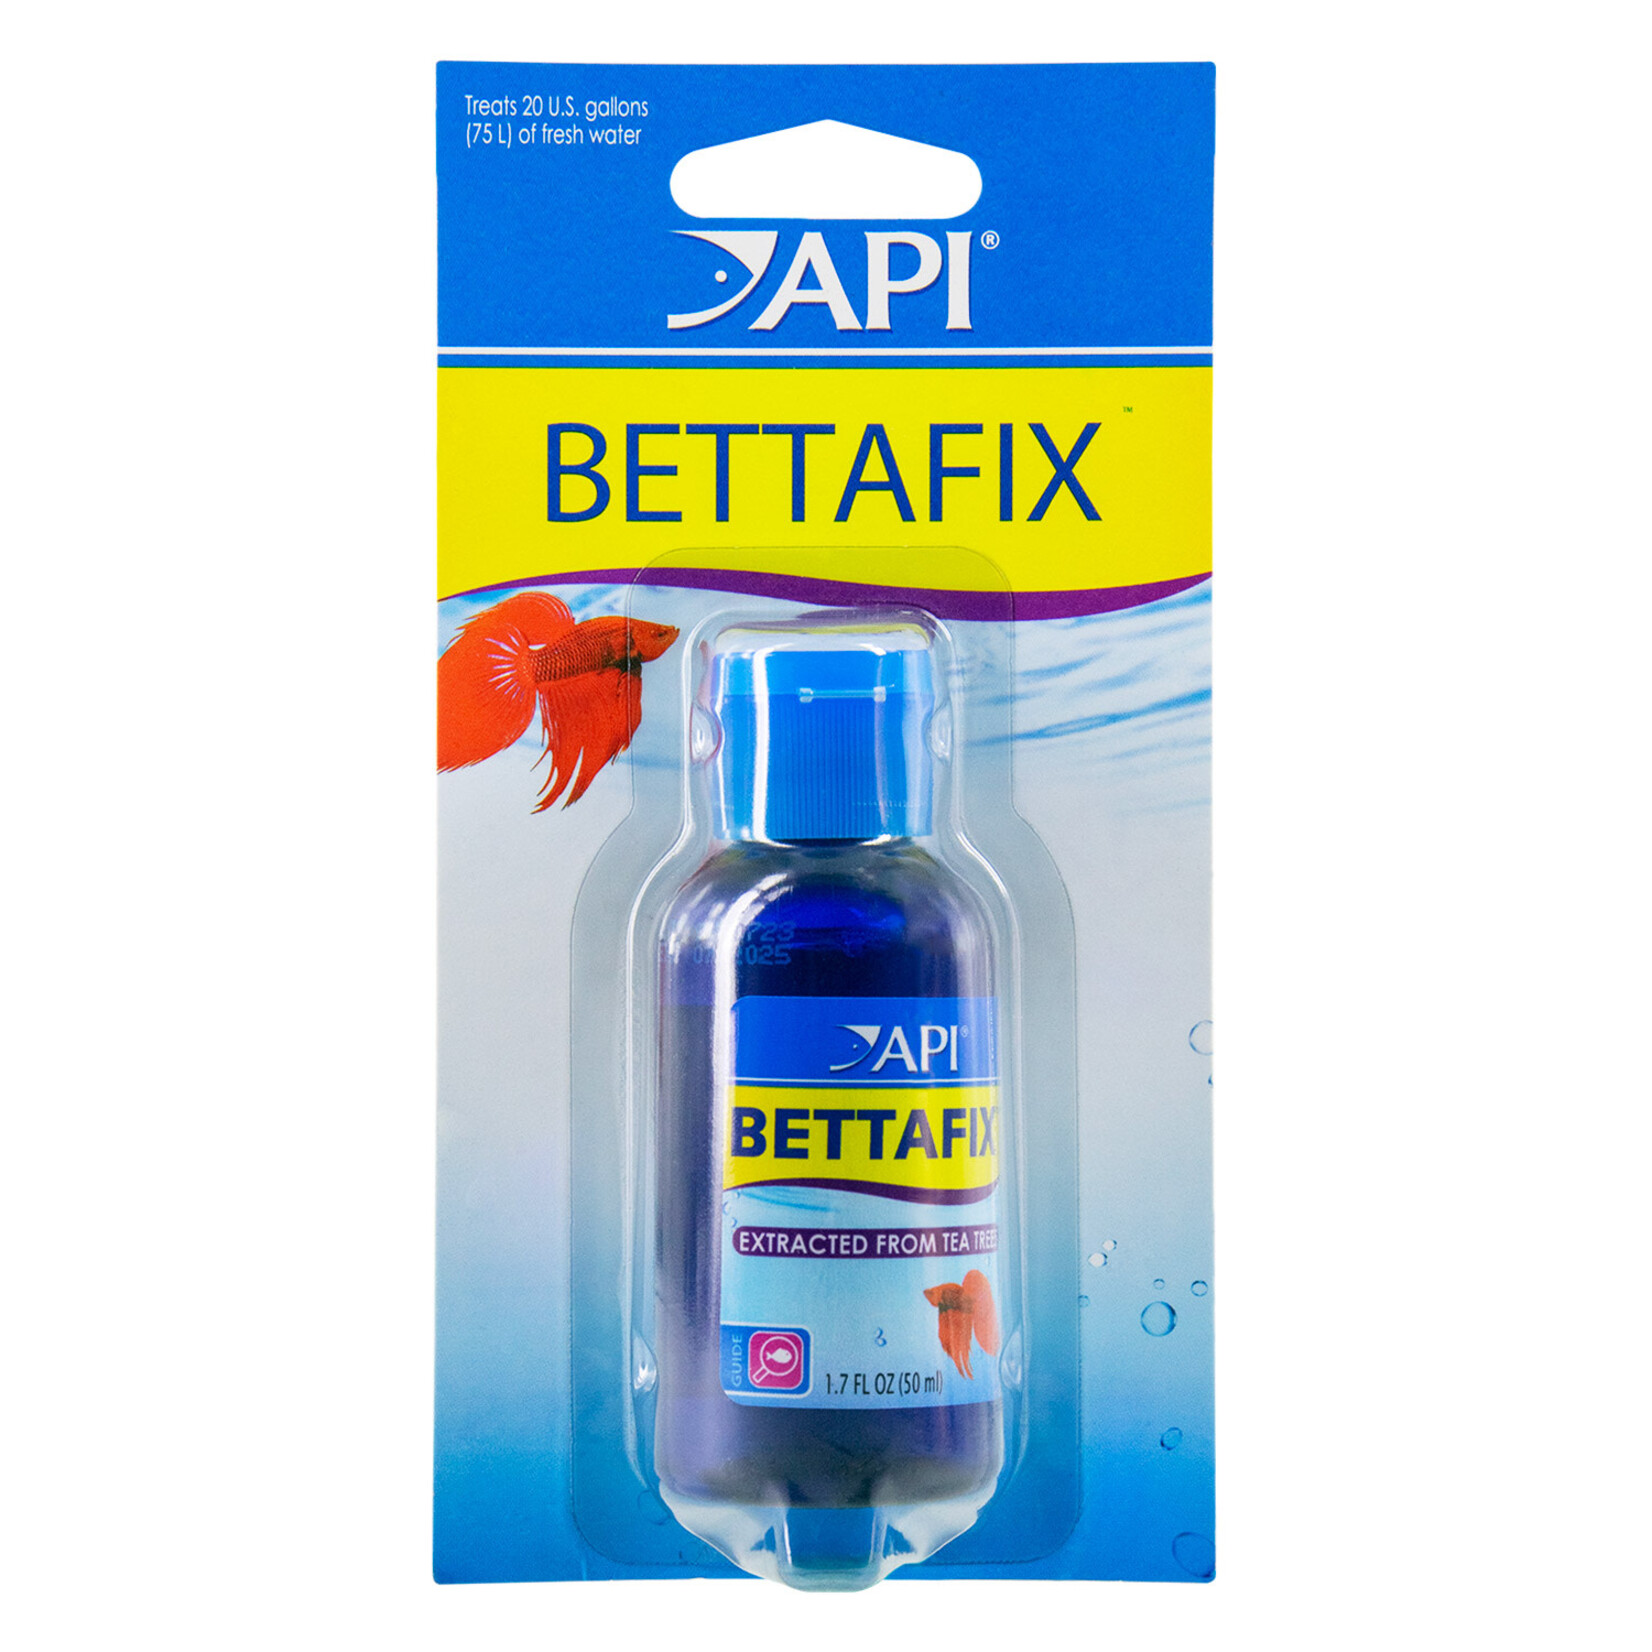 API API Bettafix - 1.7 fl oz